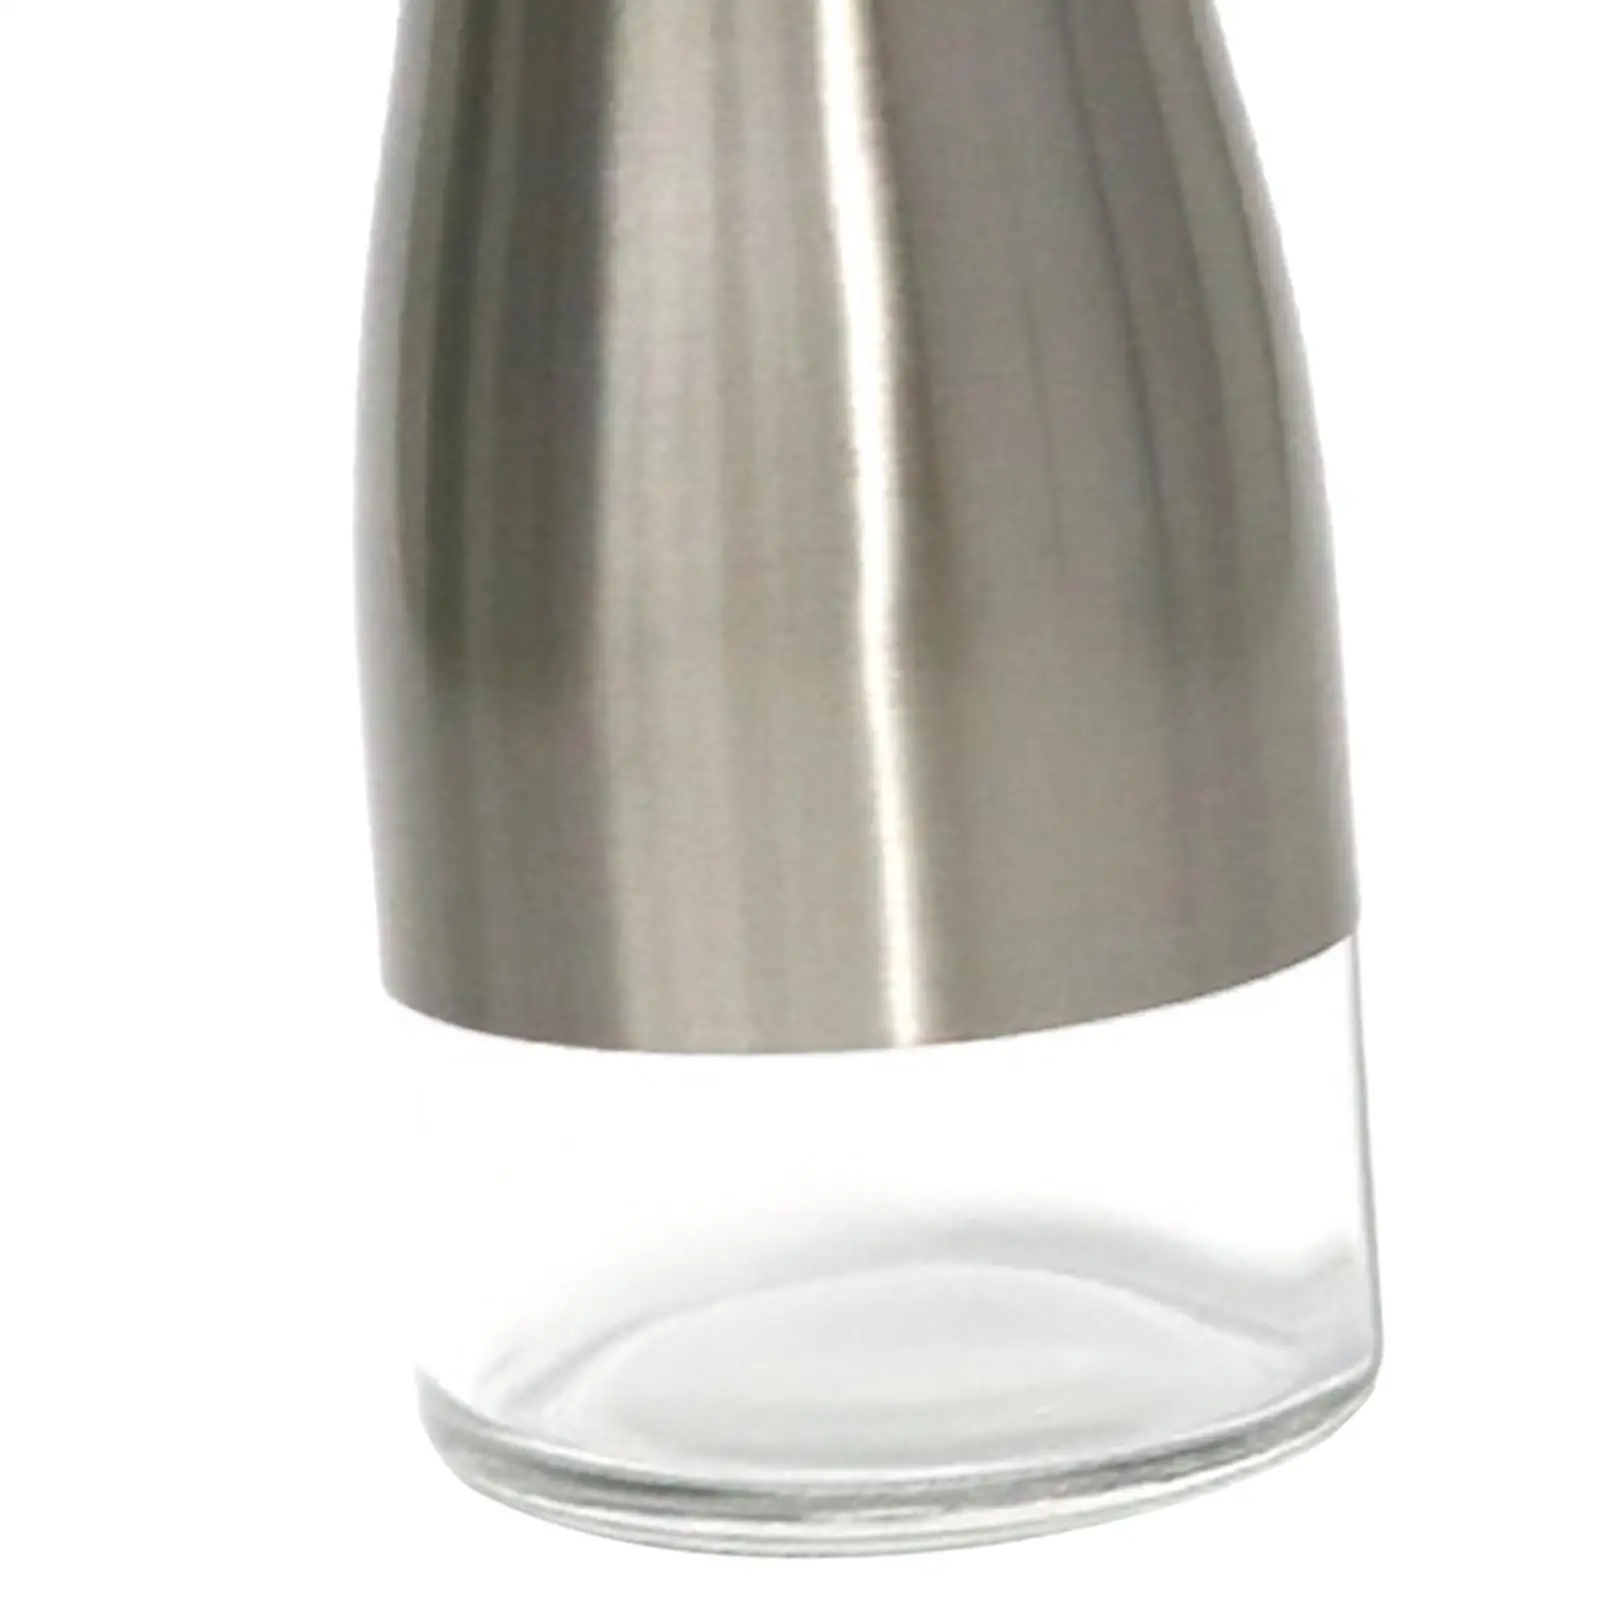 Countertop Lotion Dispenser, Lotion Pump Bottle, 300ml Hand Liquid Pump Bottle, for Makeup